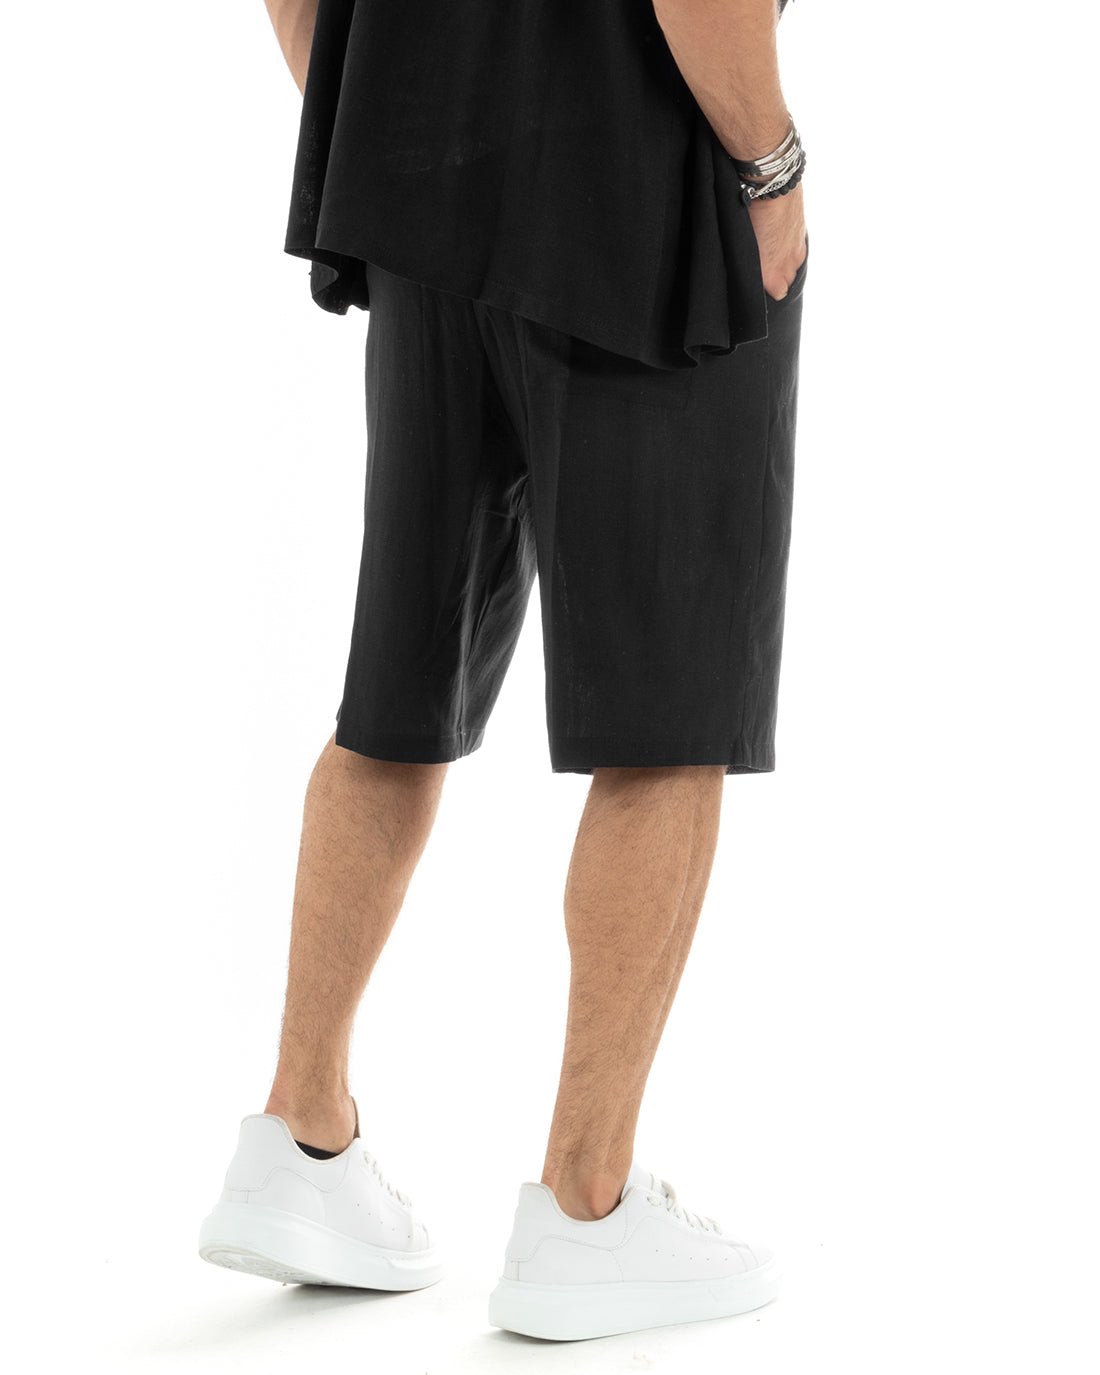 Completo Set Coordinato Uomo Lino Camicia Con Colletto Bermuda Outfit Nero GIOSAL-OU2348A